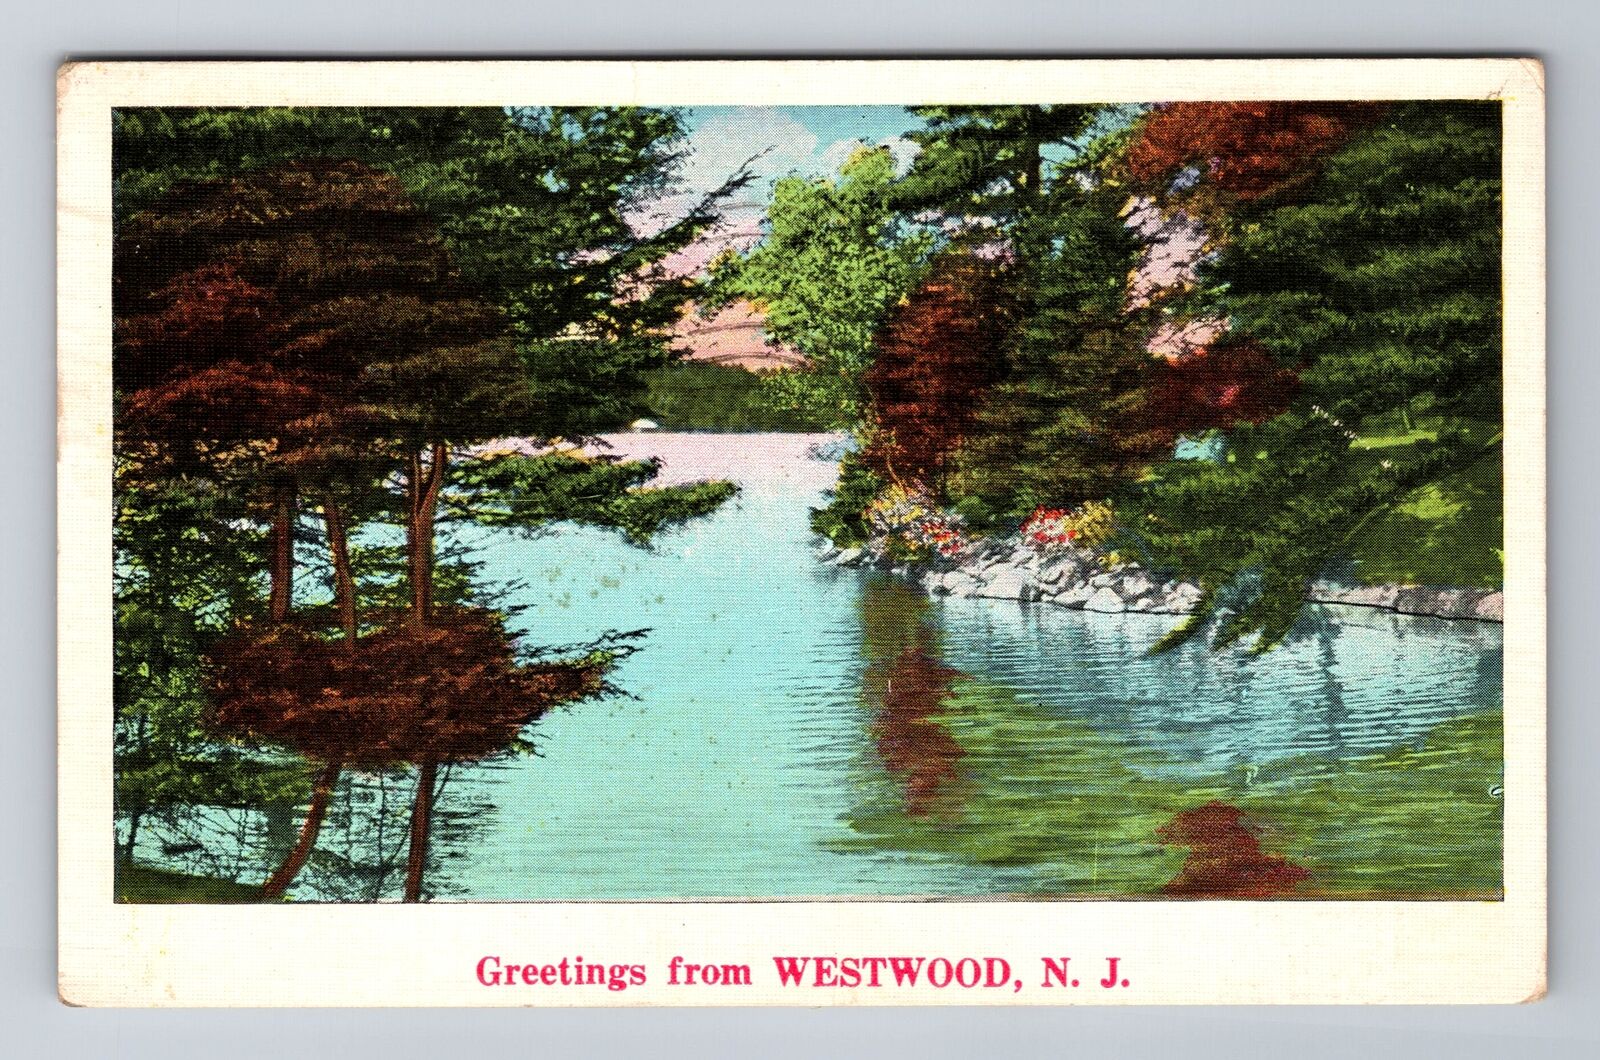 Westwood NJ-New Jersey, General Greetings, c1937 Vintage Souvenir Postcard